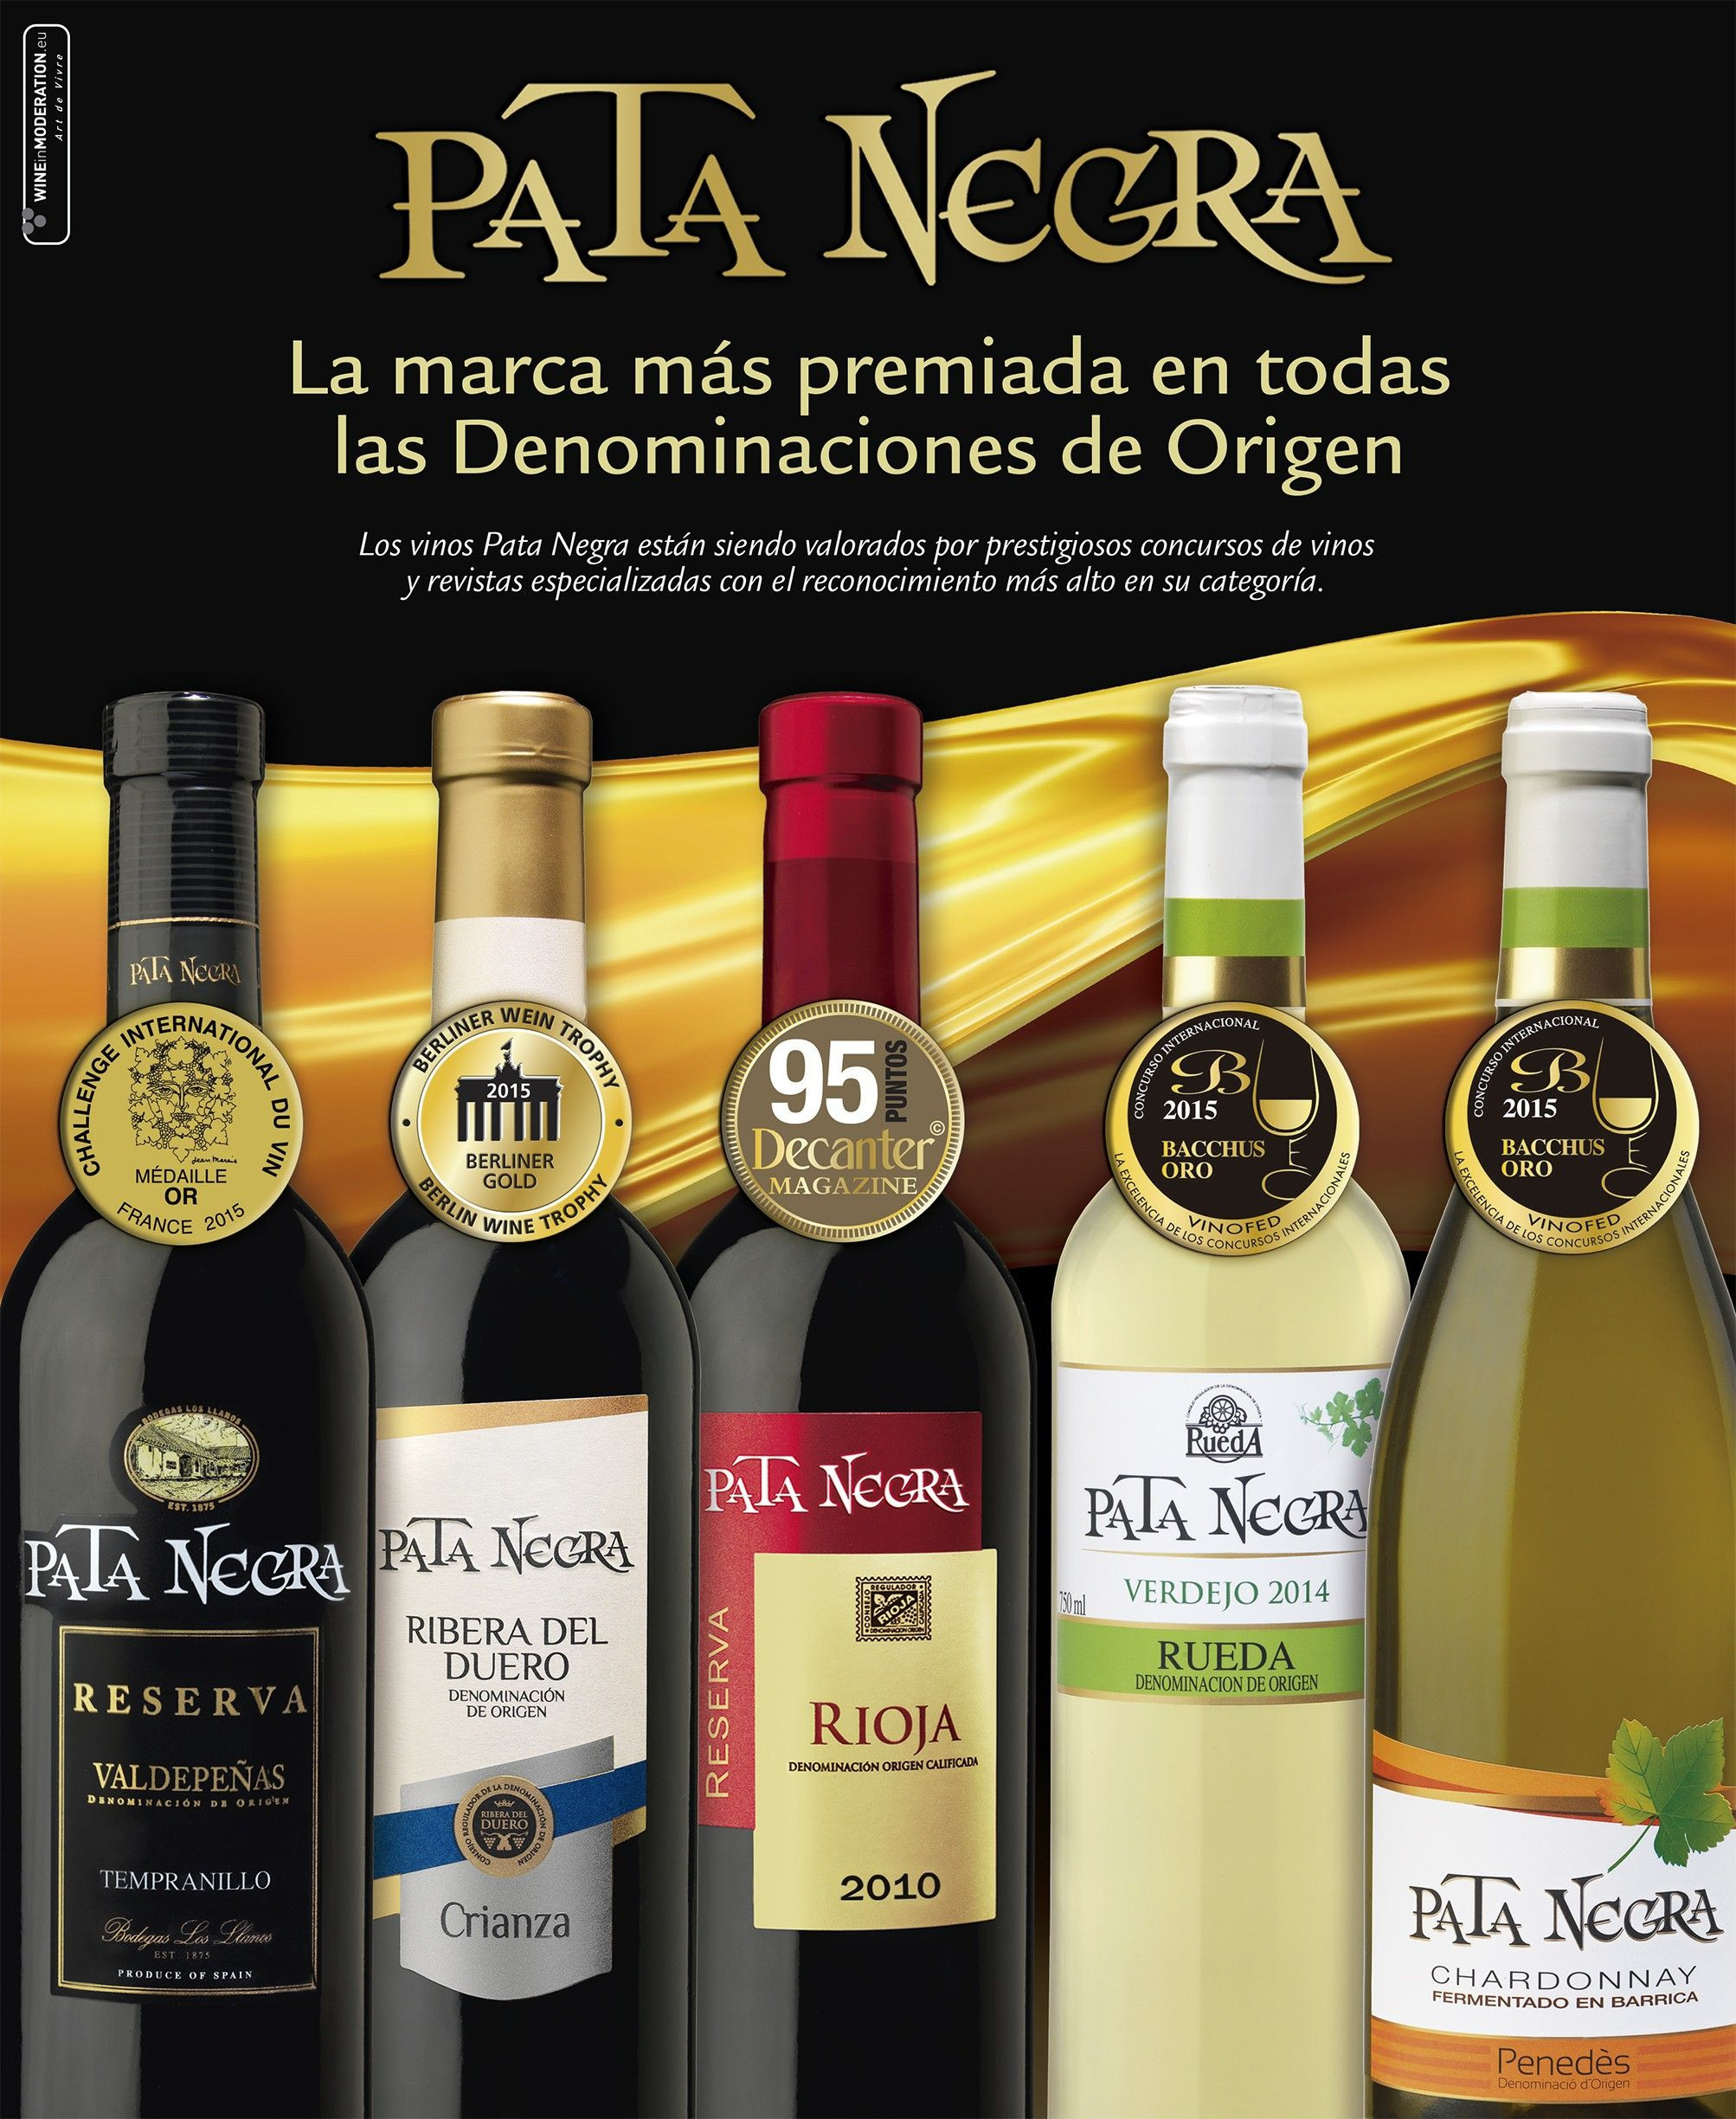 La marca de vino 'Pata Negra', de García Carrión, la más vendida